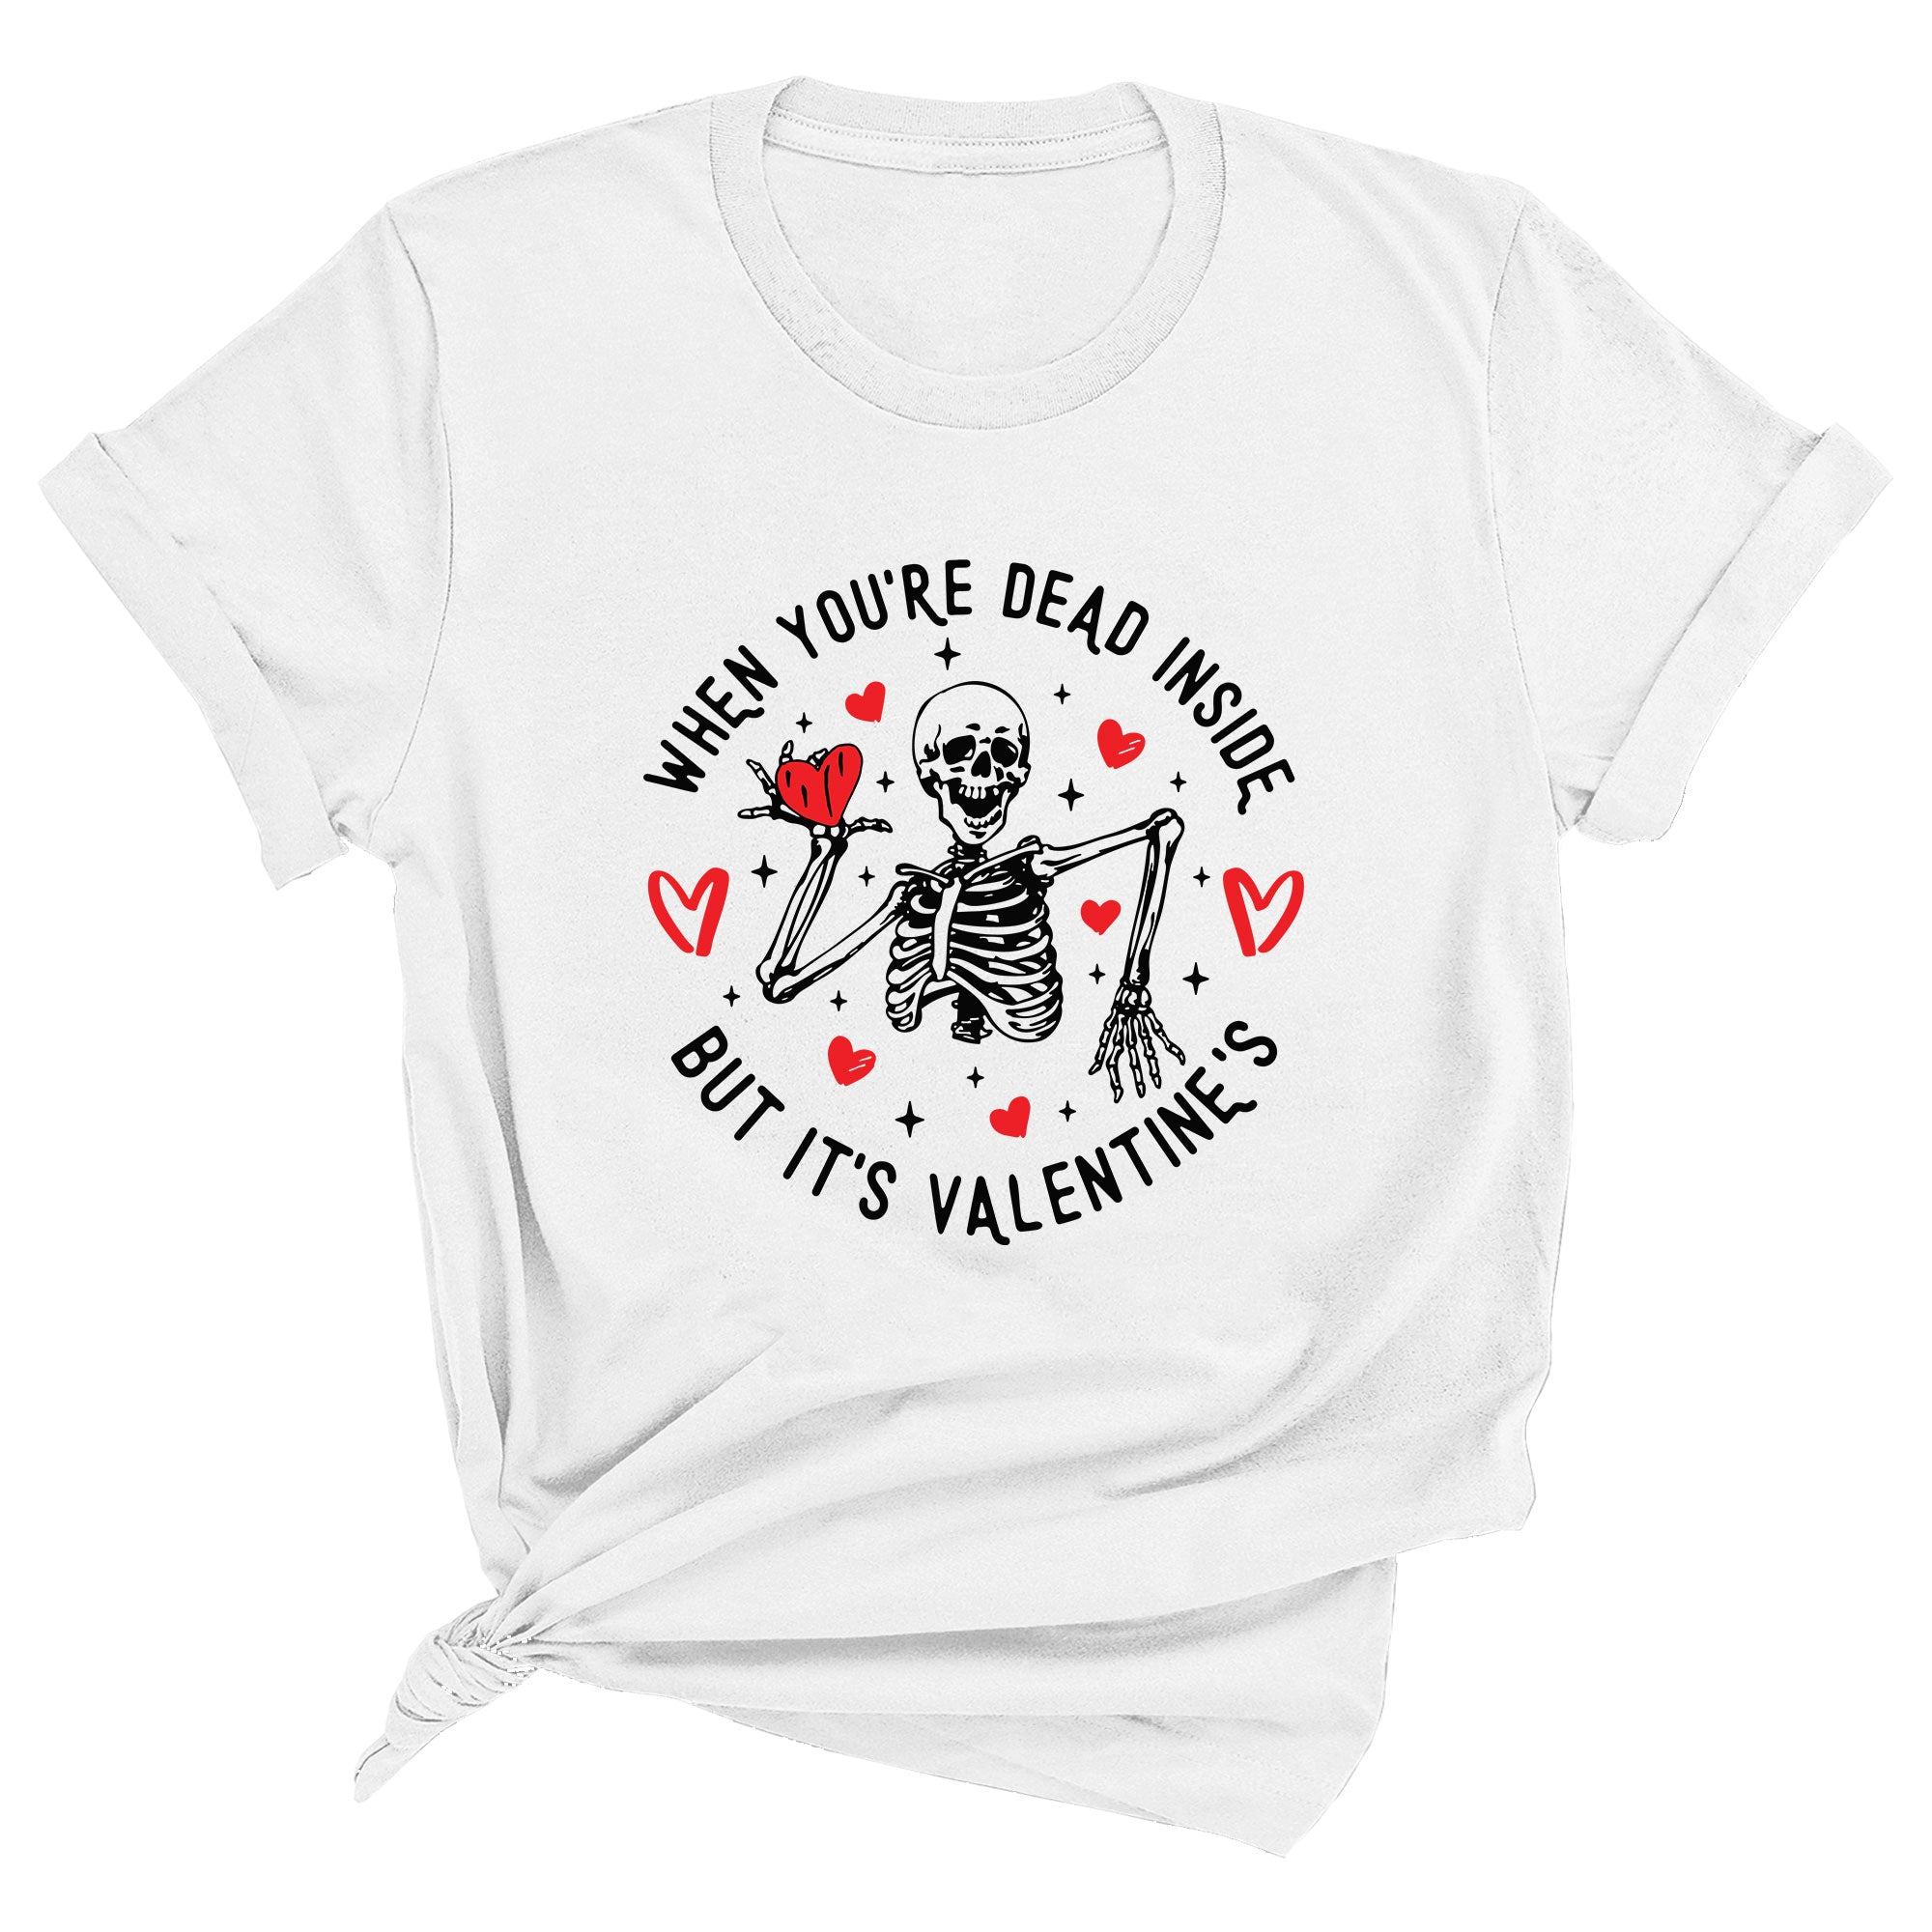 When You're Dead Inside, But It's Valentines Premium Unisex T-Shirt